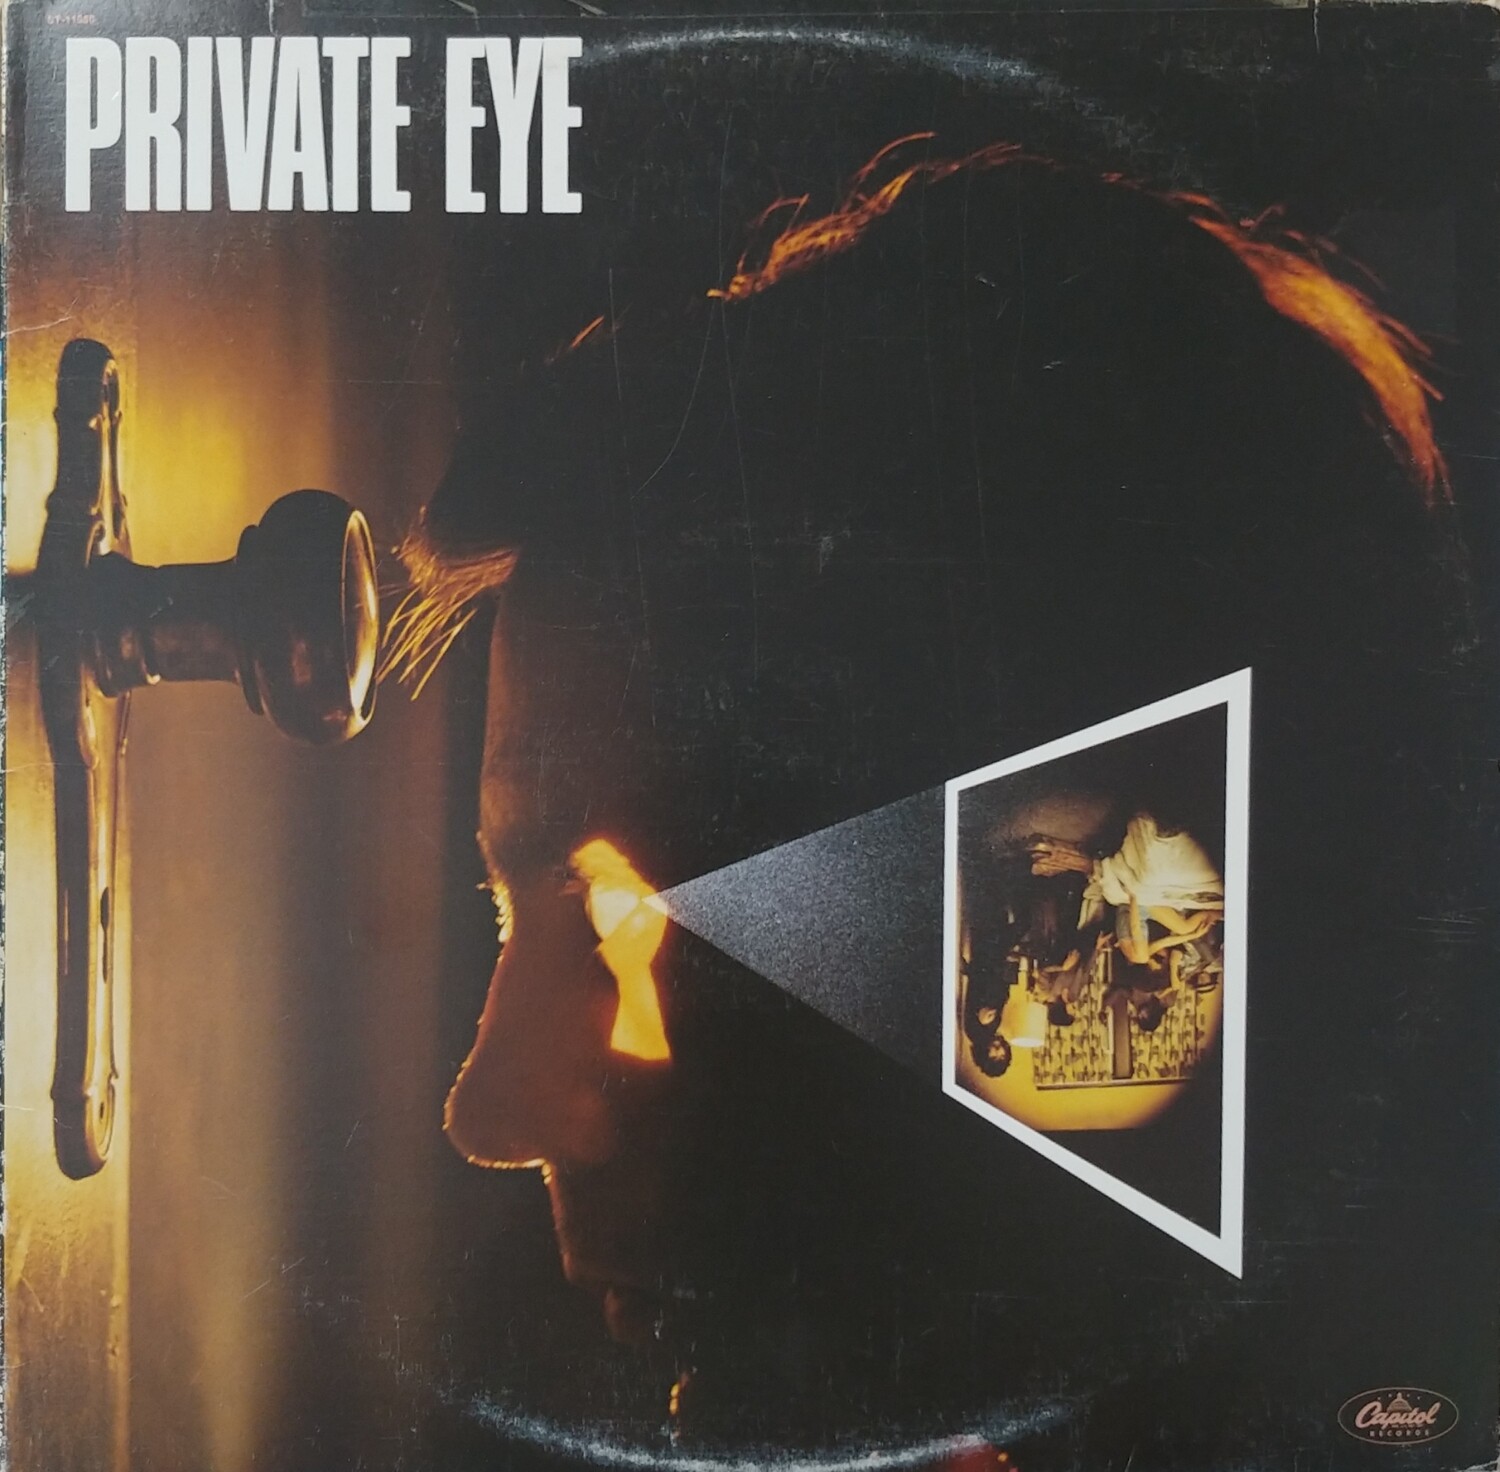 Private Eye - Private Eye